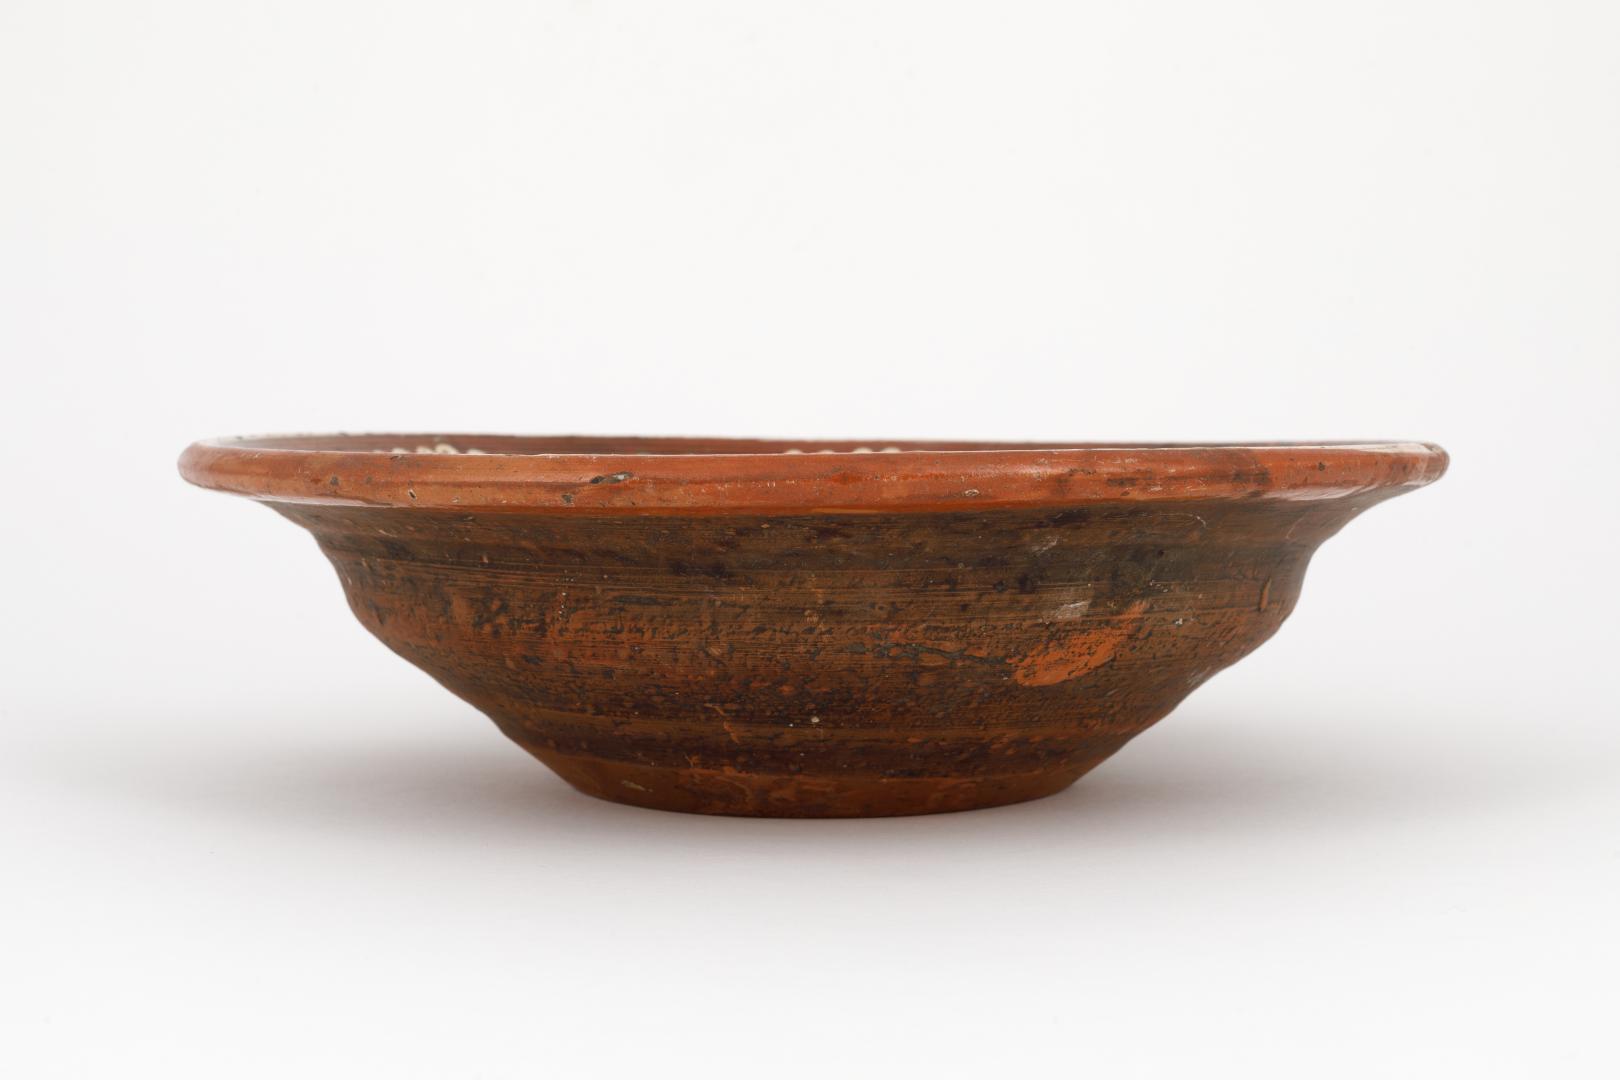 Polumysok (bowl)